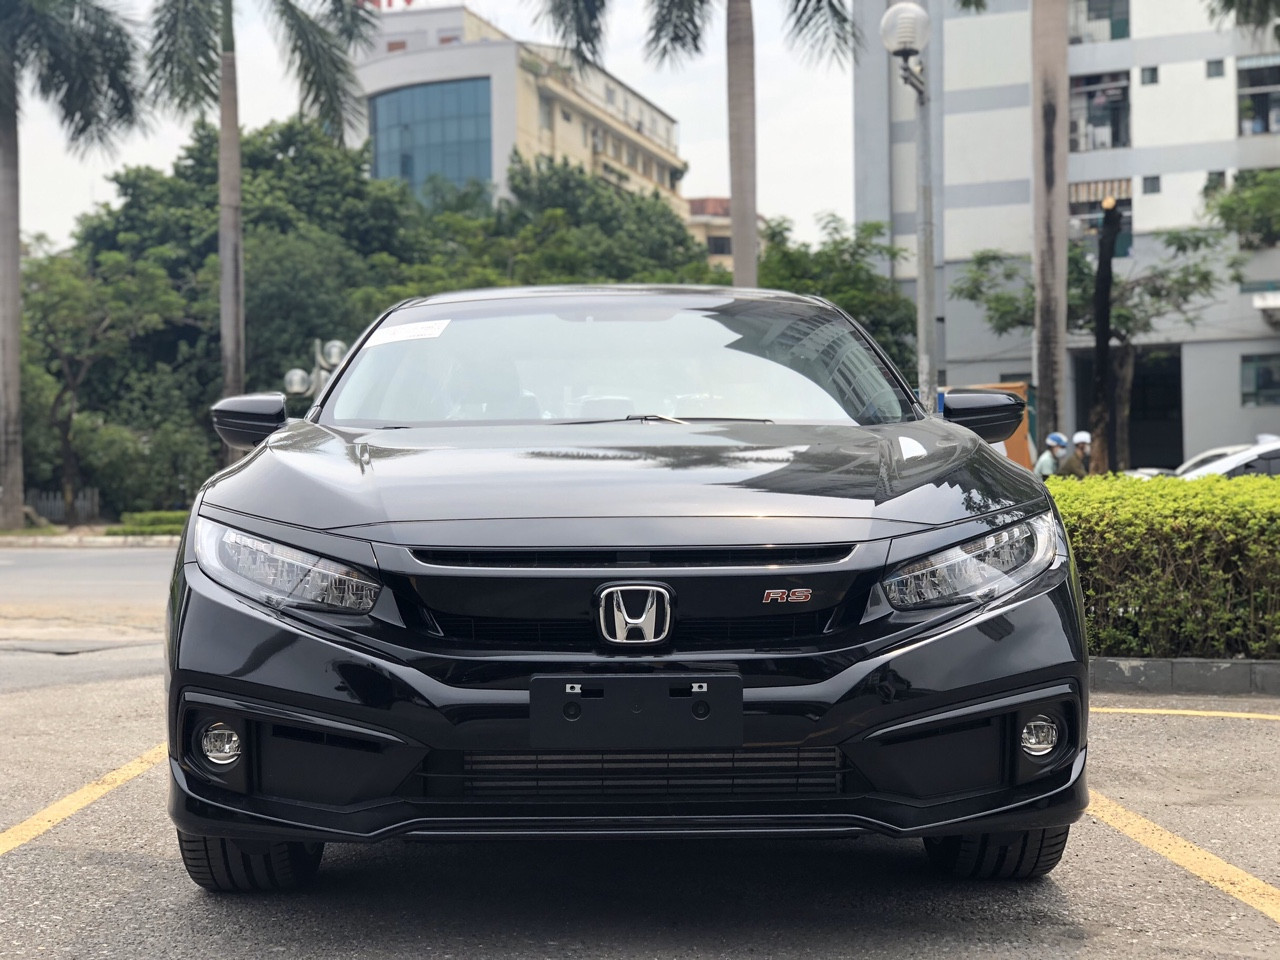 Honda Civic RS bổ sung màu mới  Đỏ cá tính  Đậm chất thể thao